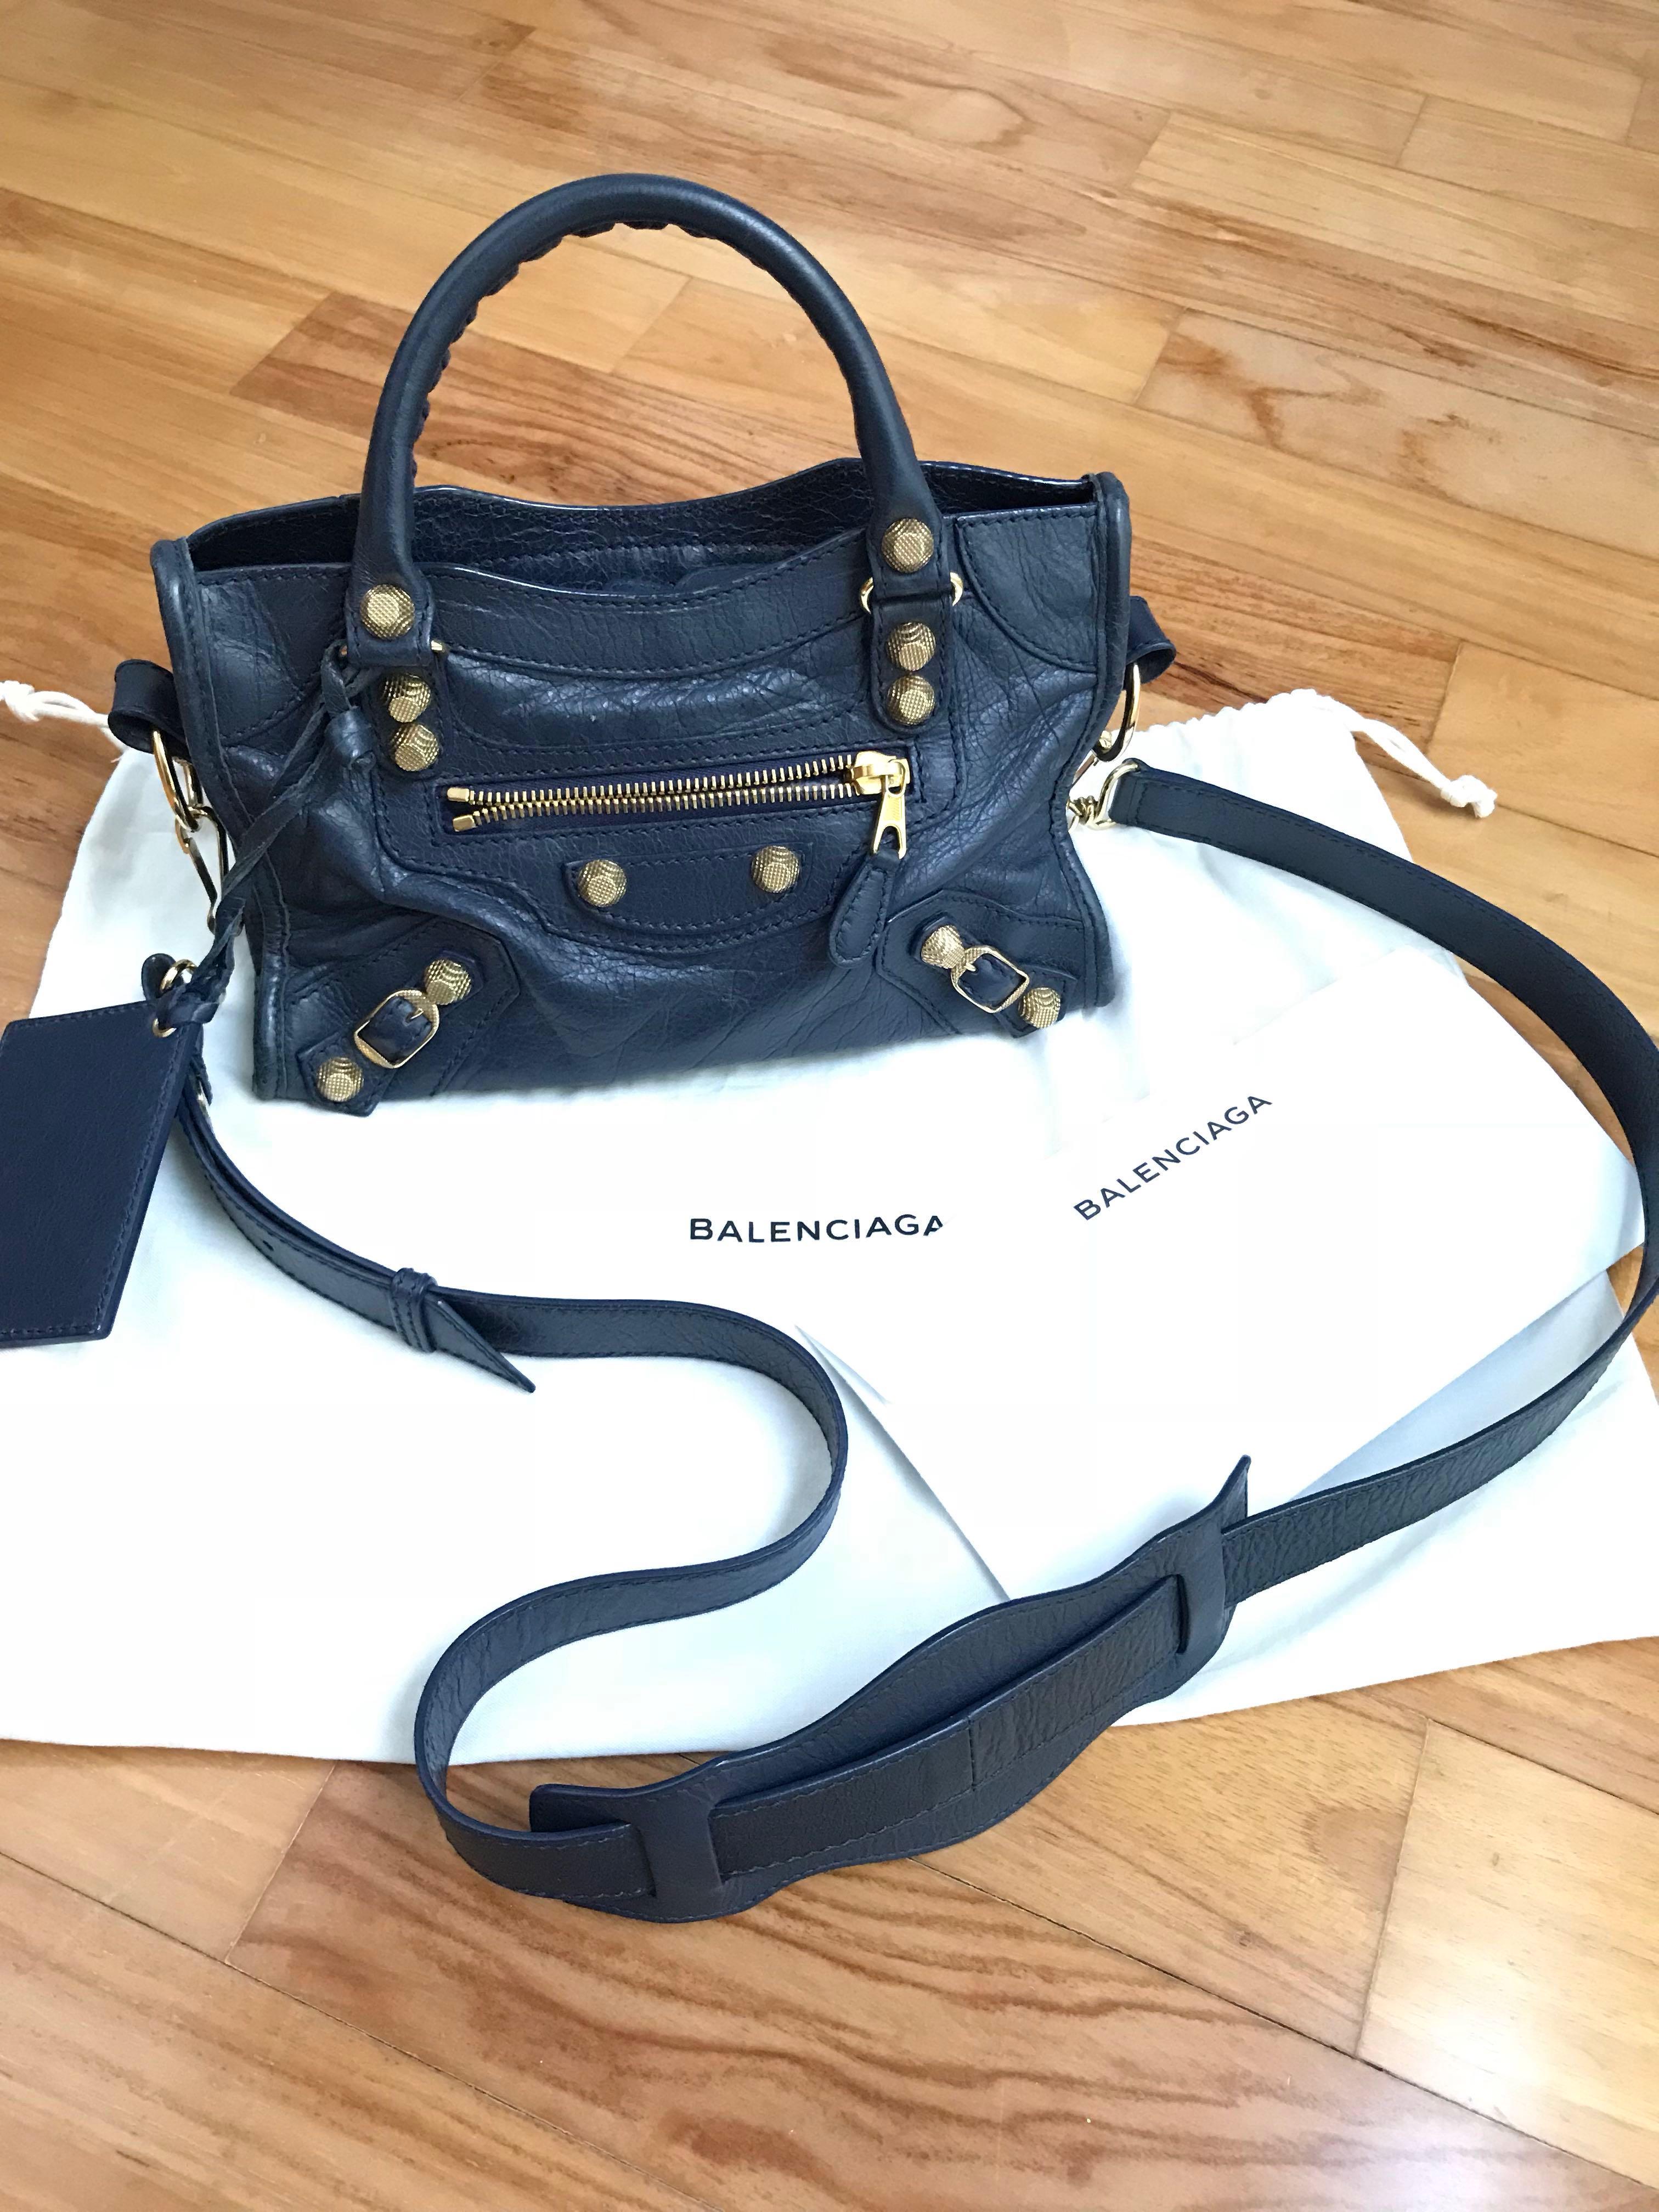 Balenciaga Balenciaga City Mini Bags  Handbags for Women  Authenticity  Guaranteed  eBay